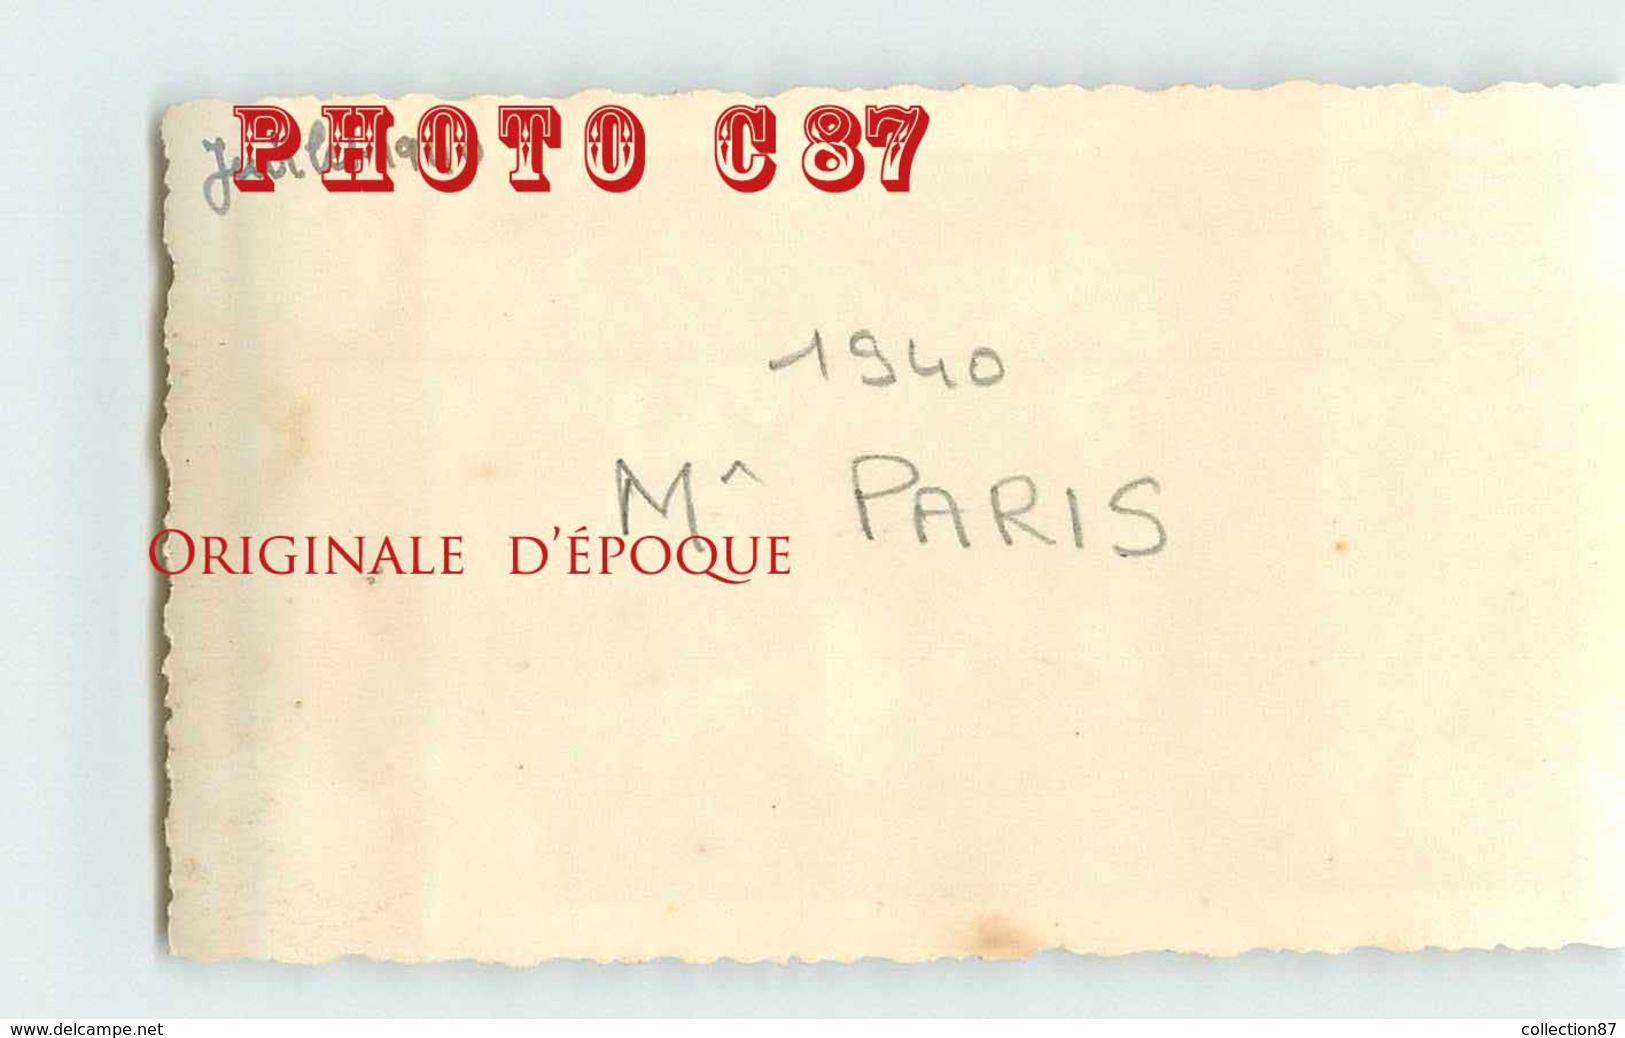 MONSIEUR PARIS MILITAIRE De La COLONNIALE En JUILLET 1940 Au MALI < TAILLE De La VUE 6.5cm X 11cm - Genealogy